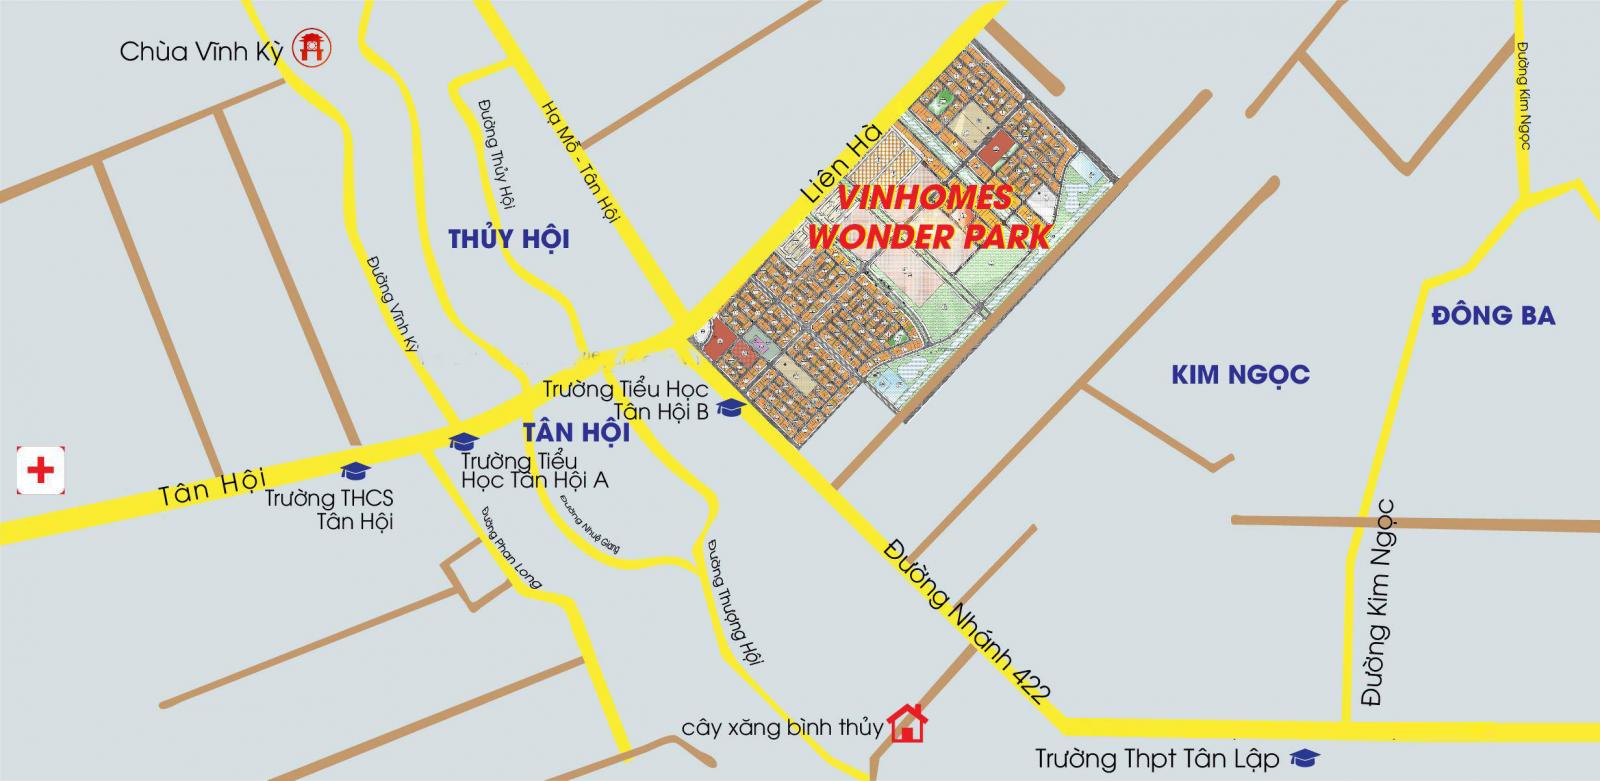 Hình ảnh về Vinhomes Wonder Park